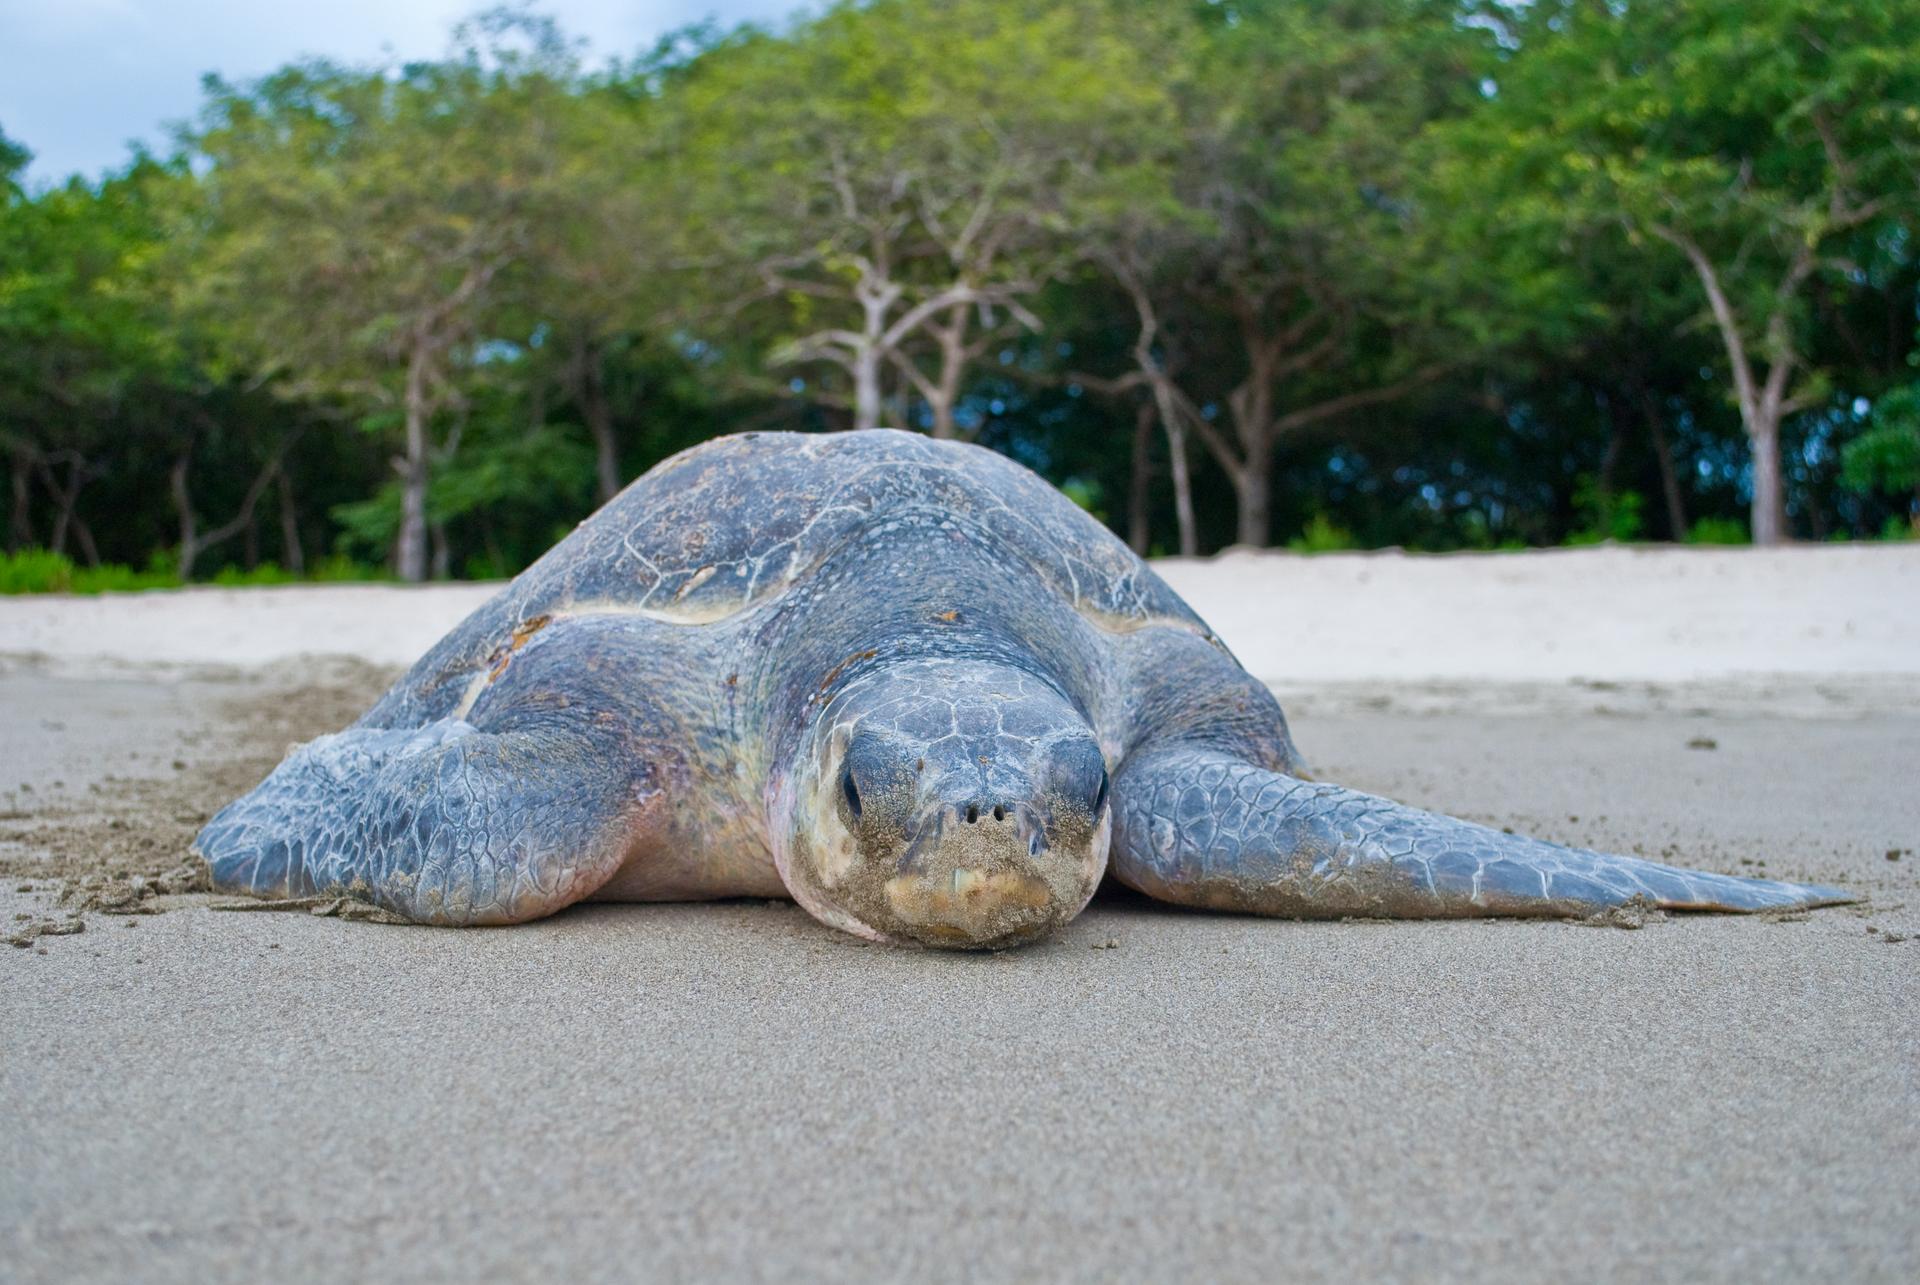 A sea turtle nesting in La Flor, Nicaragua.